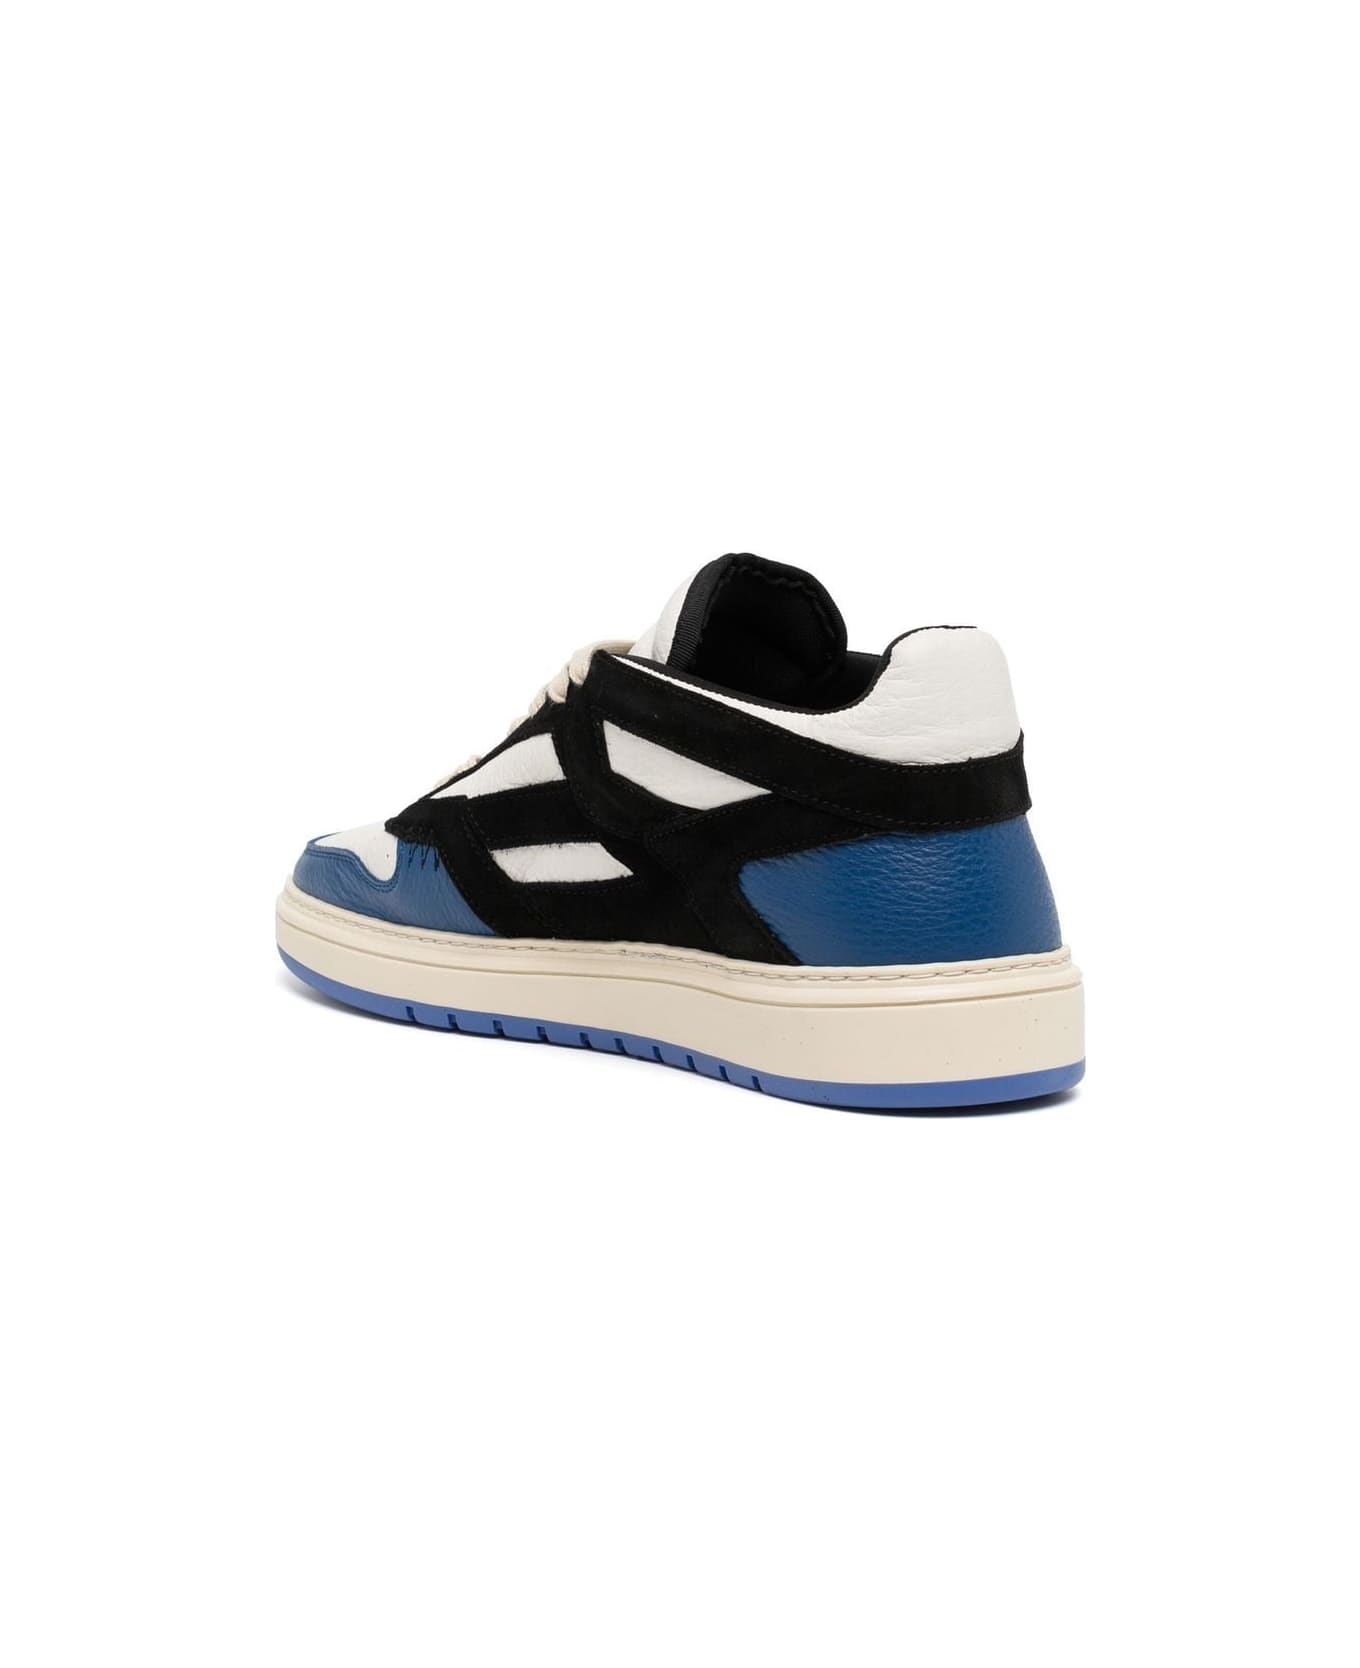 REPRESENT Reptor Low Sneakers - Black Cobalt Blue